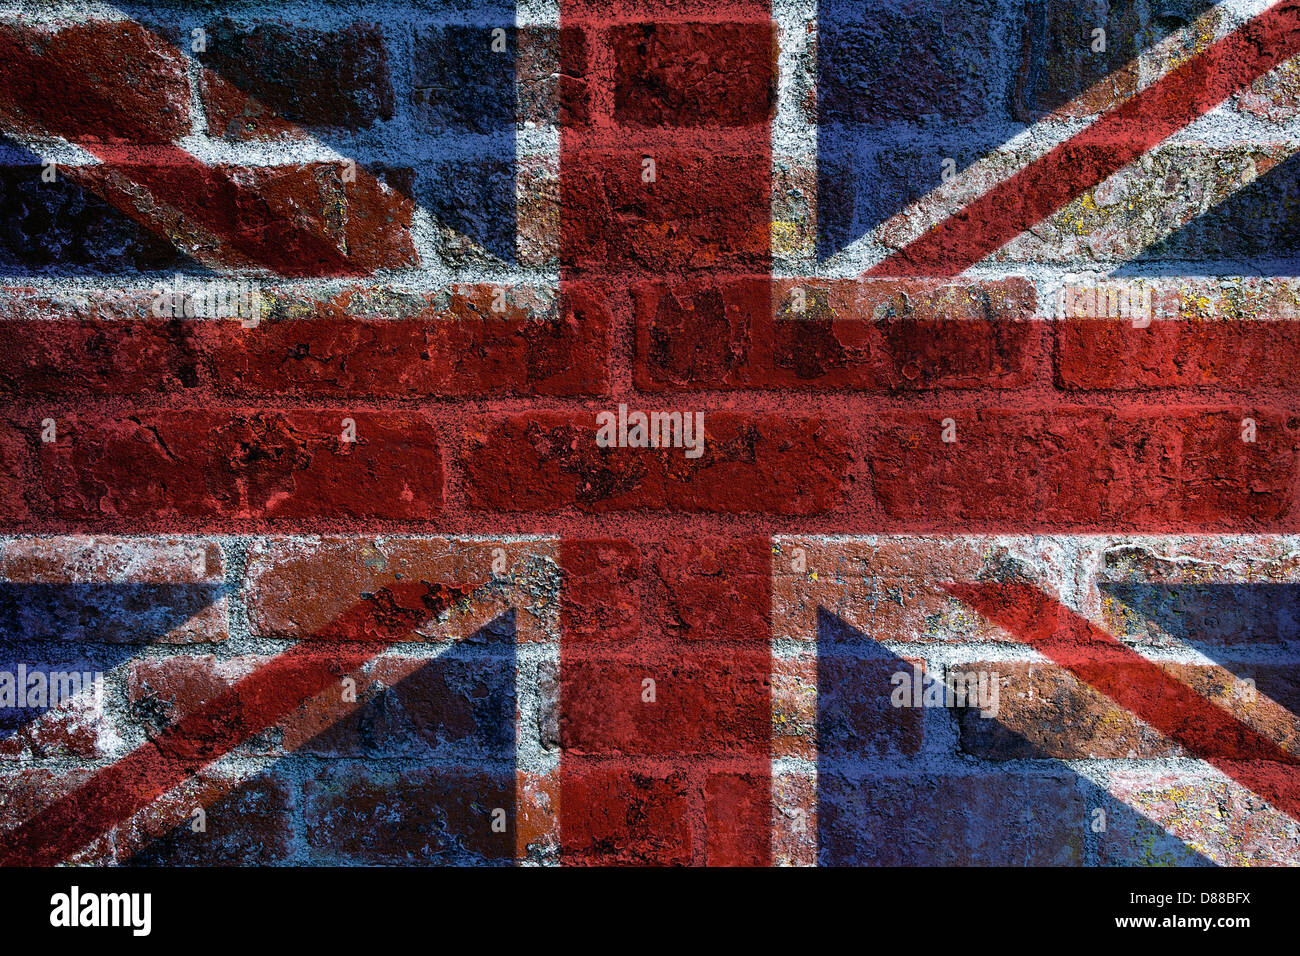 UK England Union Jack Flag on Textured Grunge Brick Wall Background Stock Photo